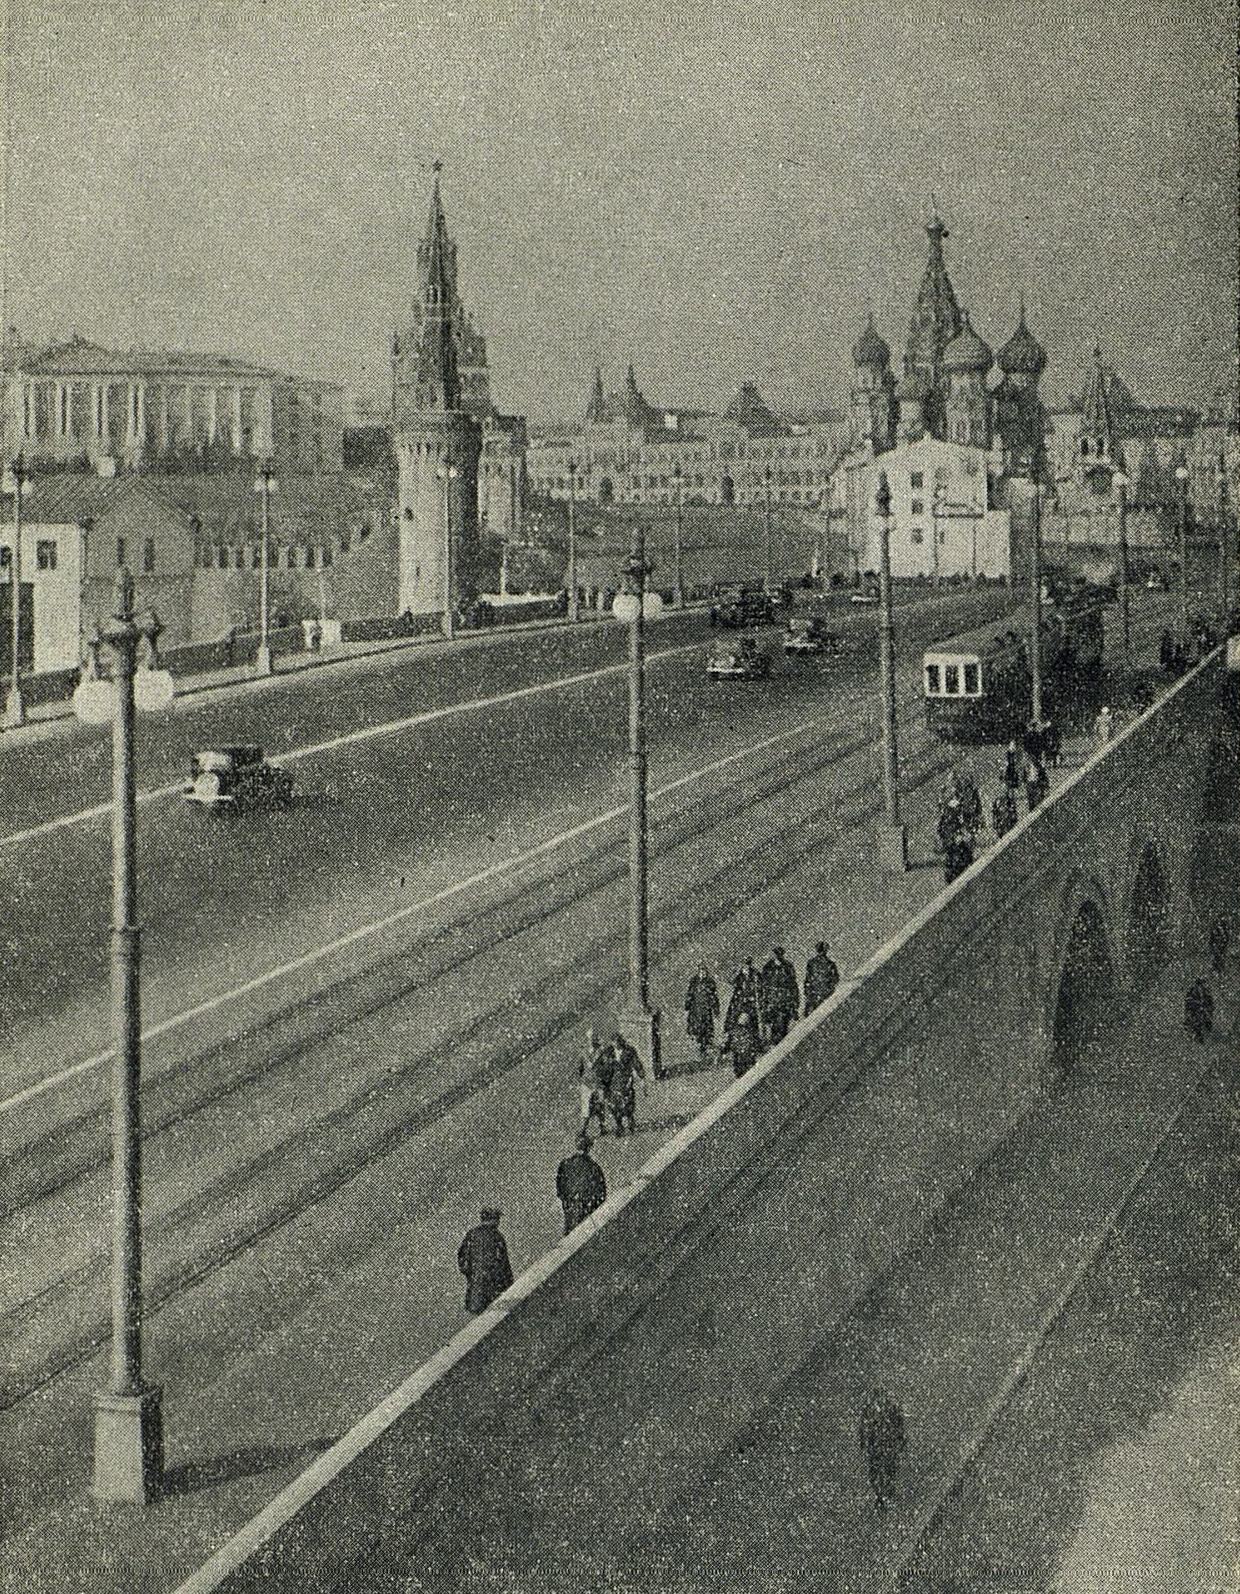 Новый Москворецкий мост через Москва-реку. Вдали видны храм Василия Блаженного, въезд на Красную площадь и кремлевские стены.